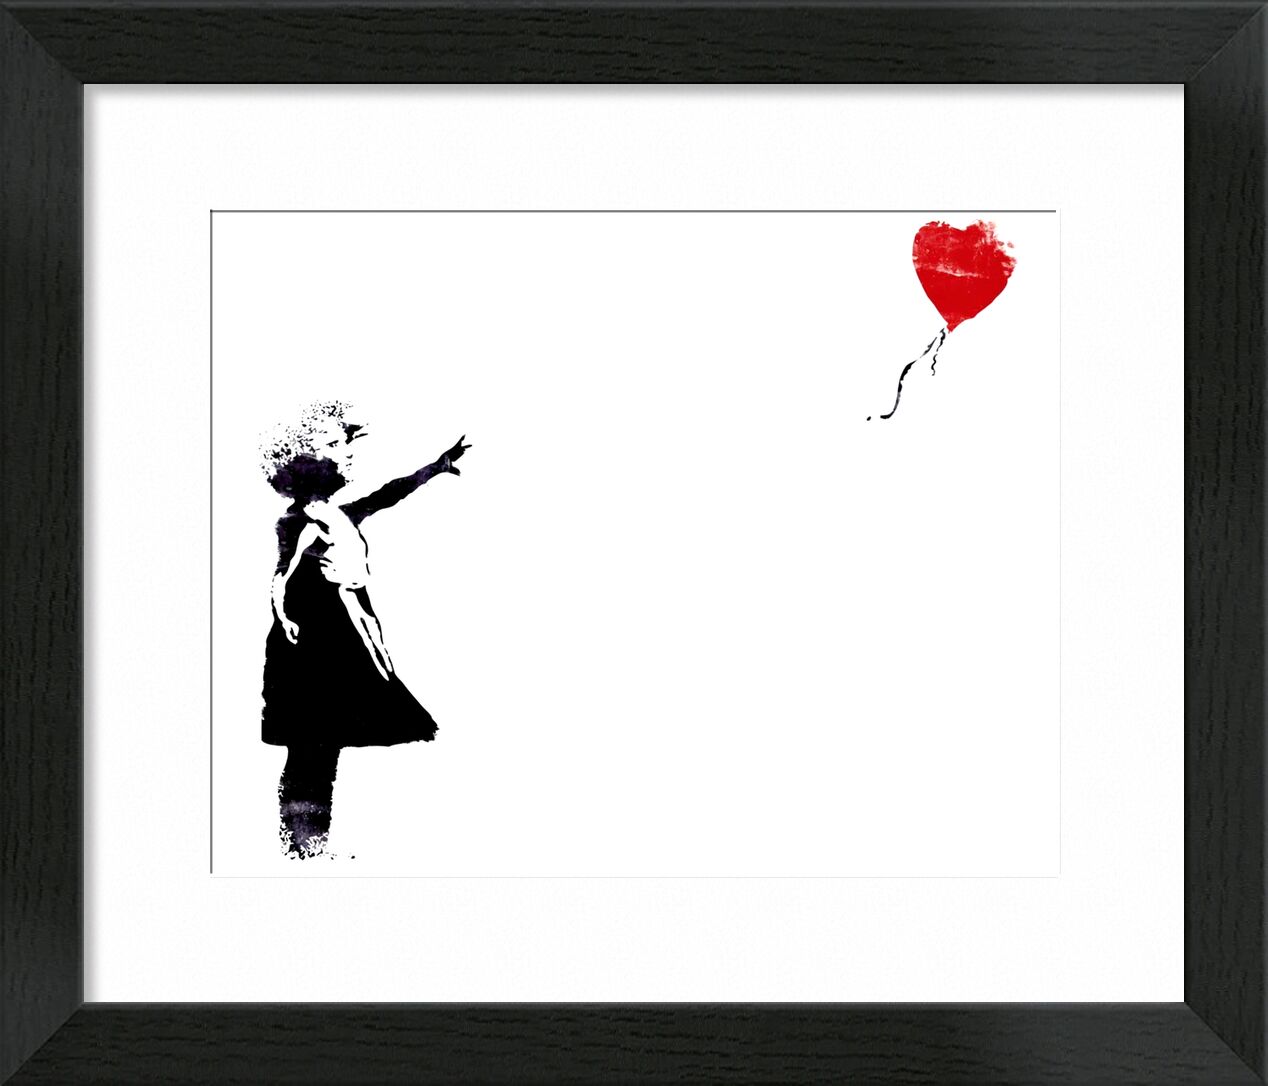 Heart Balloon - BANKSY von Bildende Kunst, Prodi Art, banksy, Ballon, Herz, Mädchen, Straßenkunst, Graffiti, gemalt